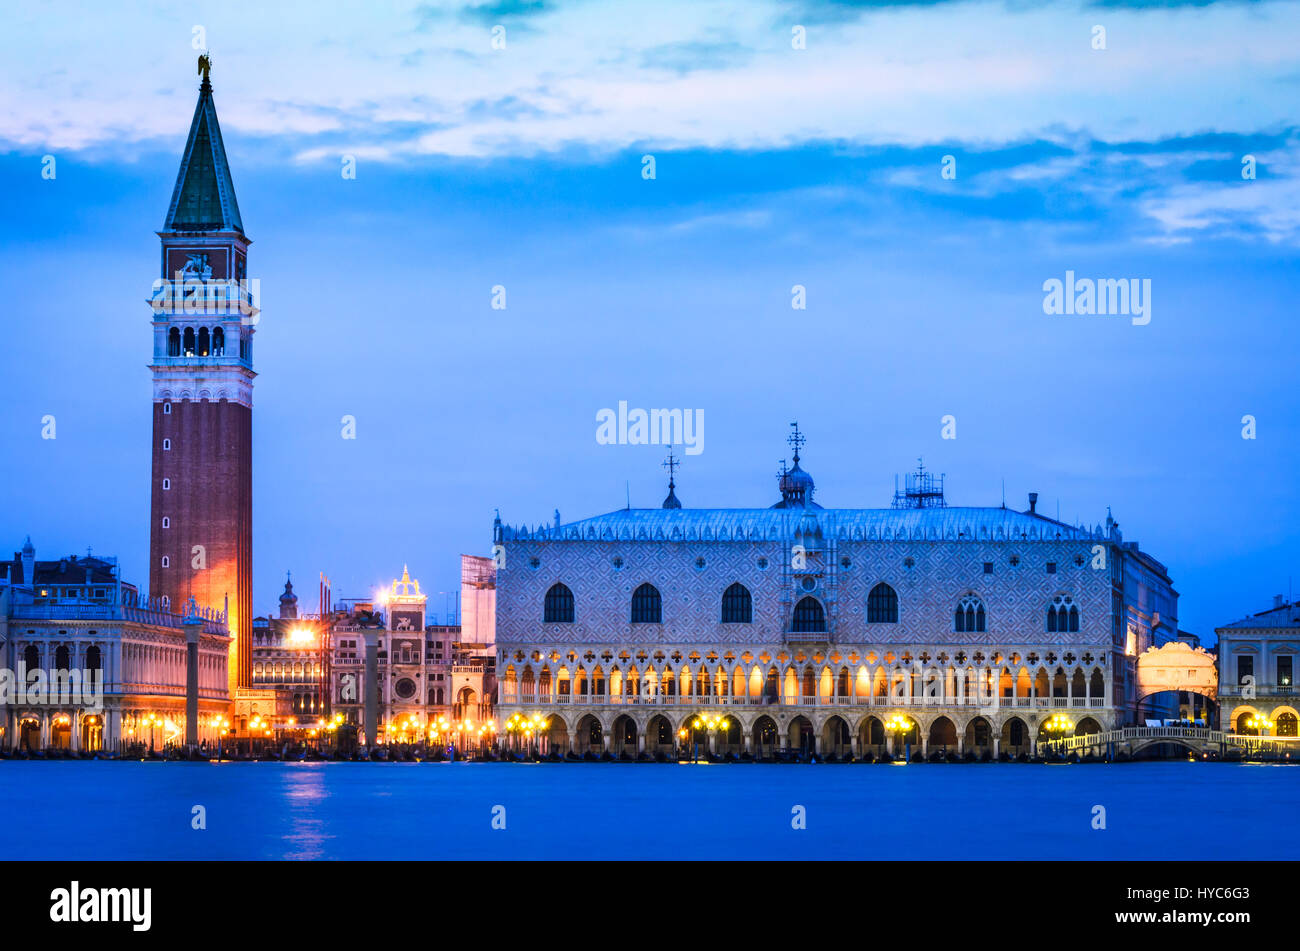 Venezia, Italia - il campanile di San Marco e il palazzo ducale di venezia, scena notturna di punto di riferimento italiano. Foto Stock